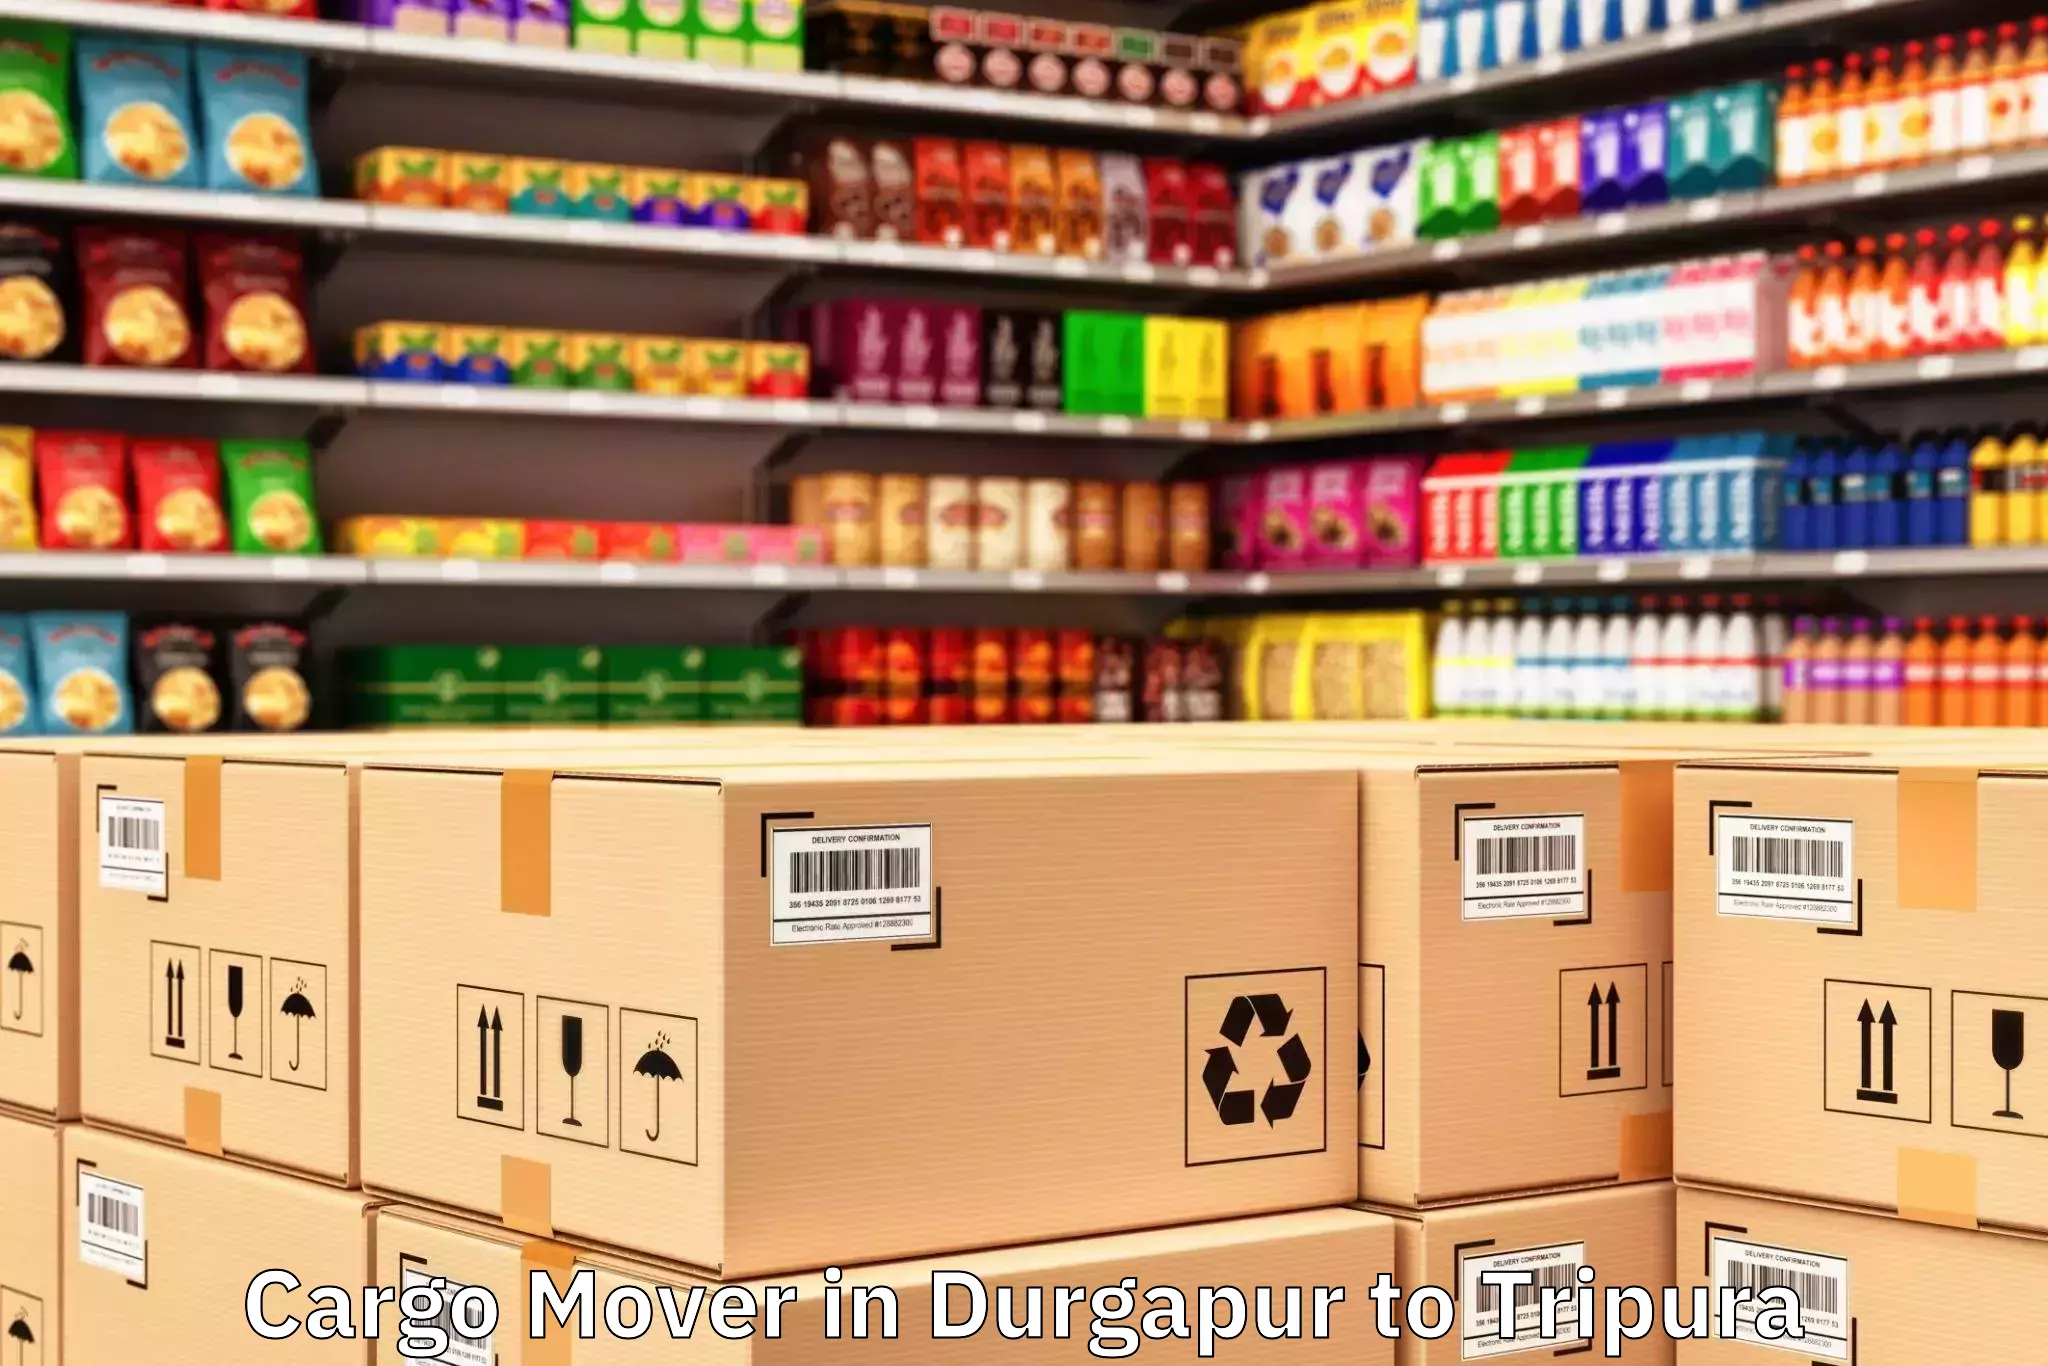 Trusted Durgapur to Tripura Cargo Mover